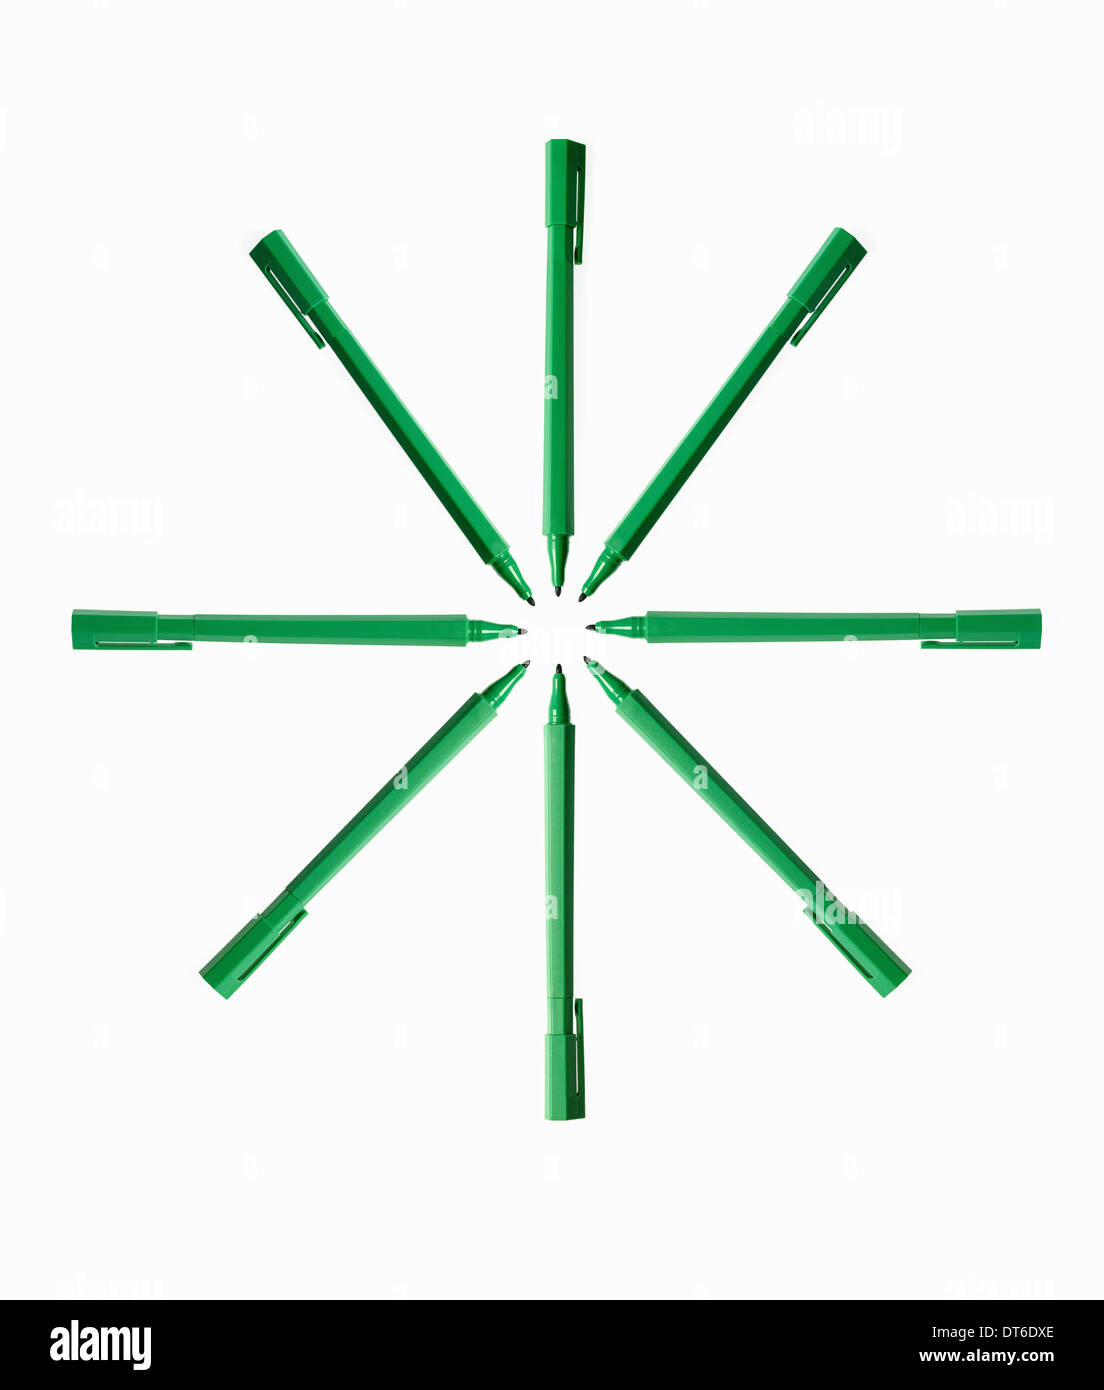 Les fournitures de bureau. Stylos feutre de couleur verte, plumes et pen top cas, disposés en étoile. Banque D'Images